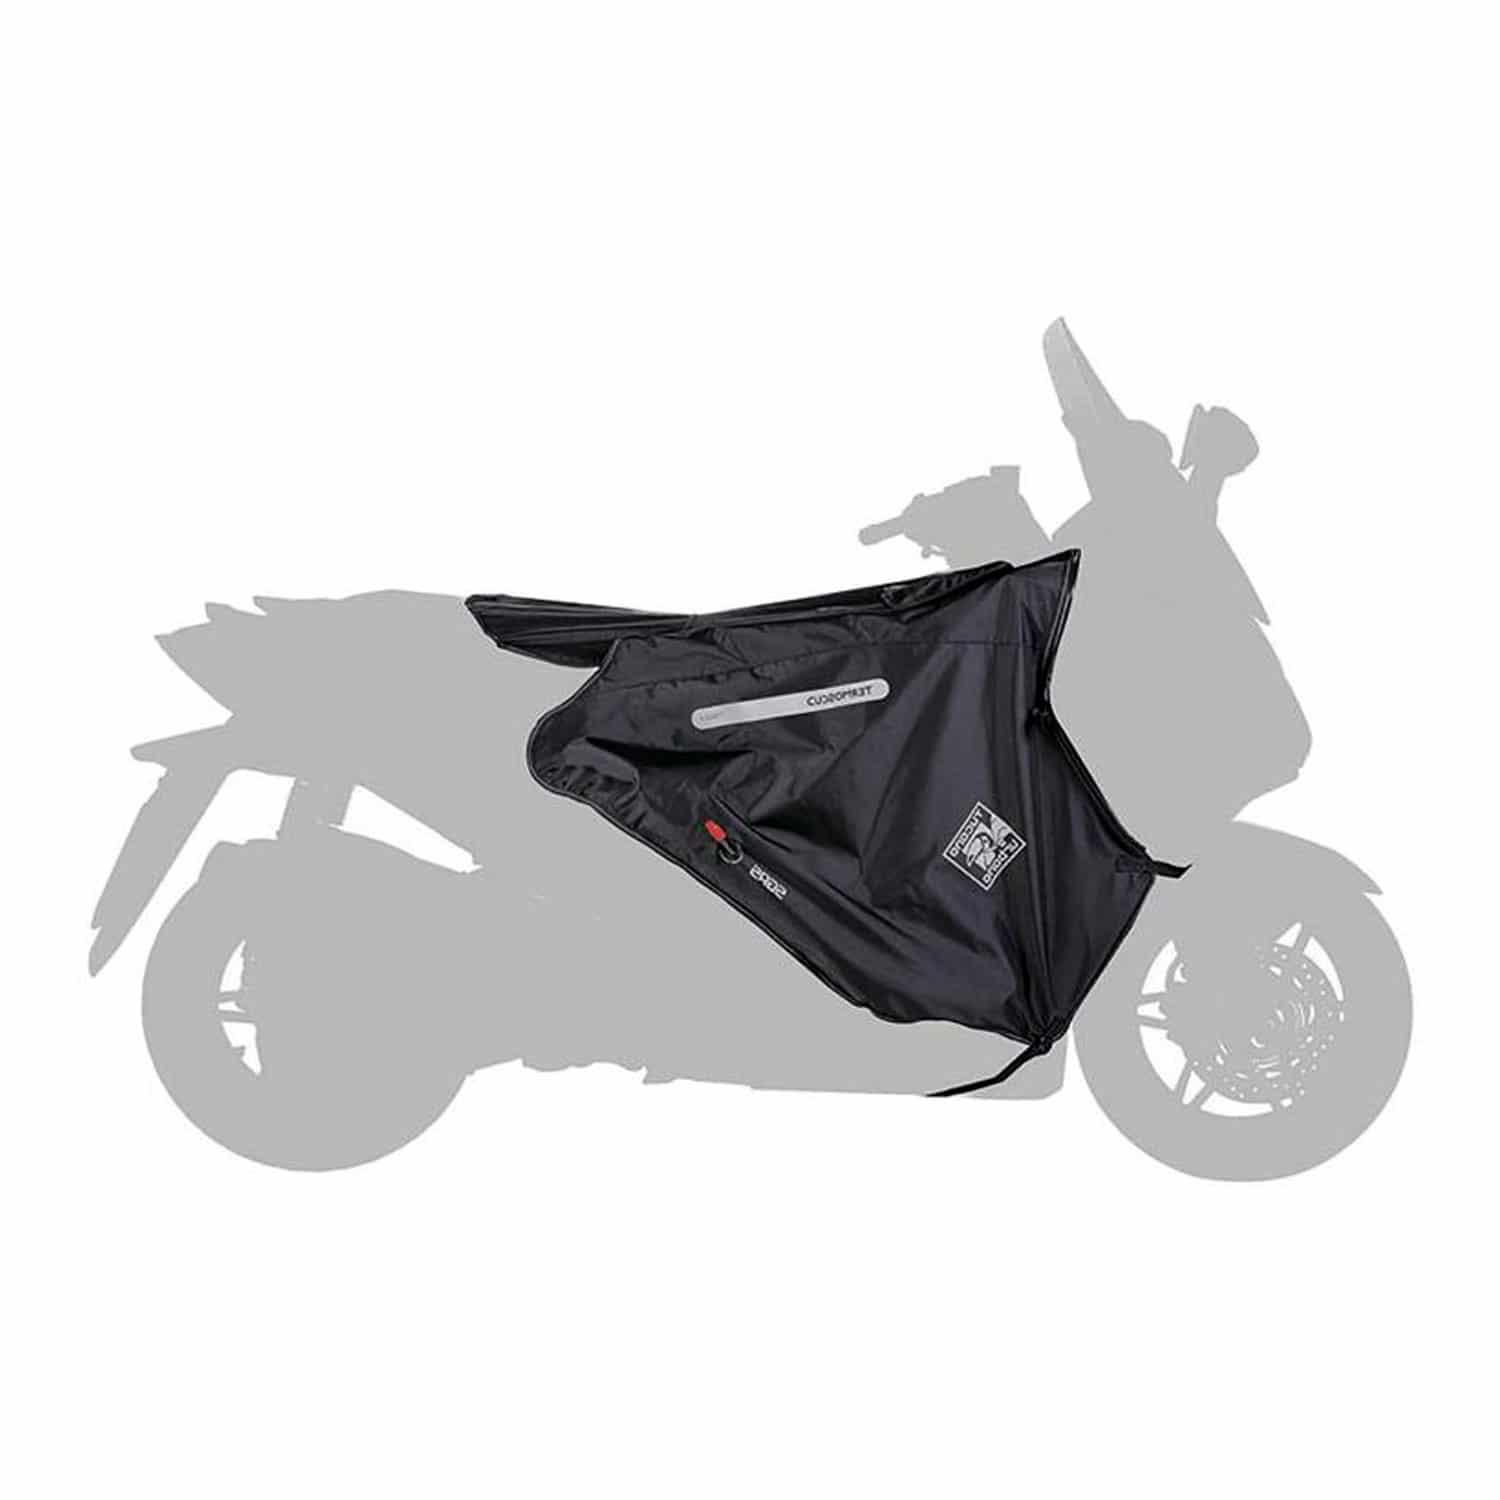 Manchons Tucano Urbano R367X pour moto et scooter en néoprène